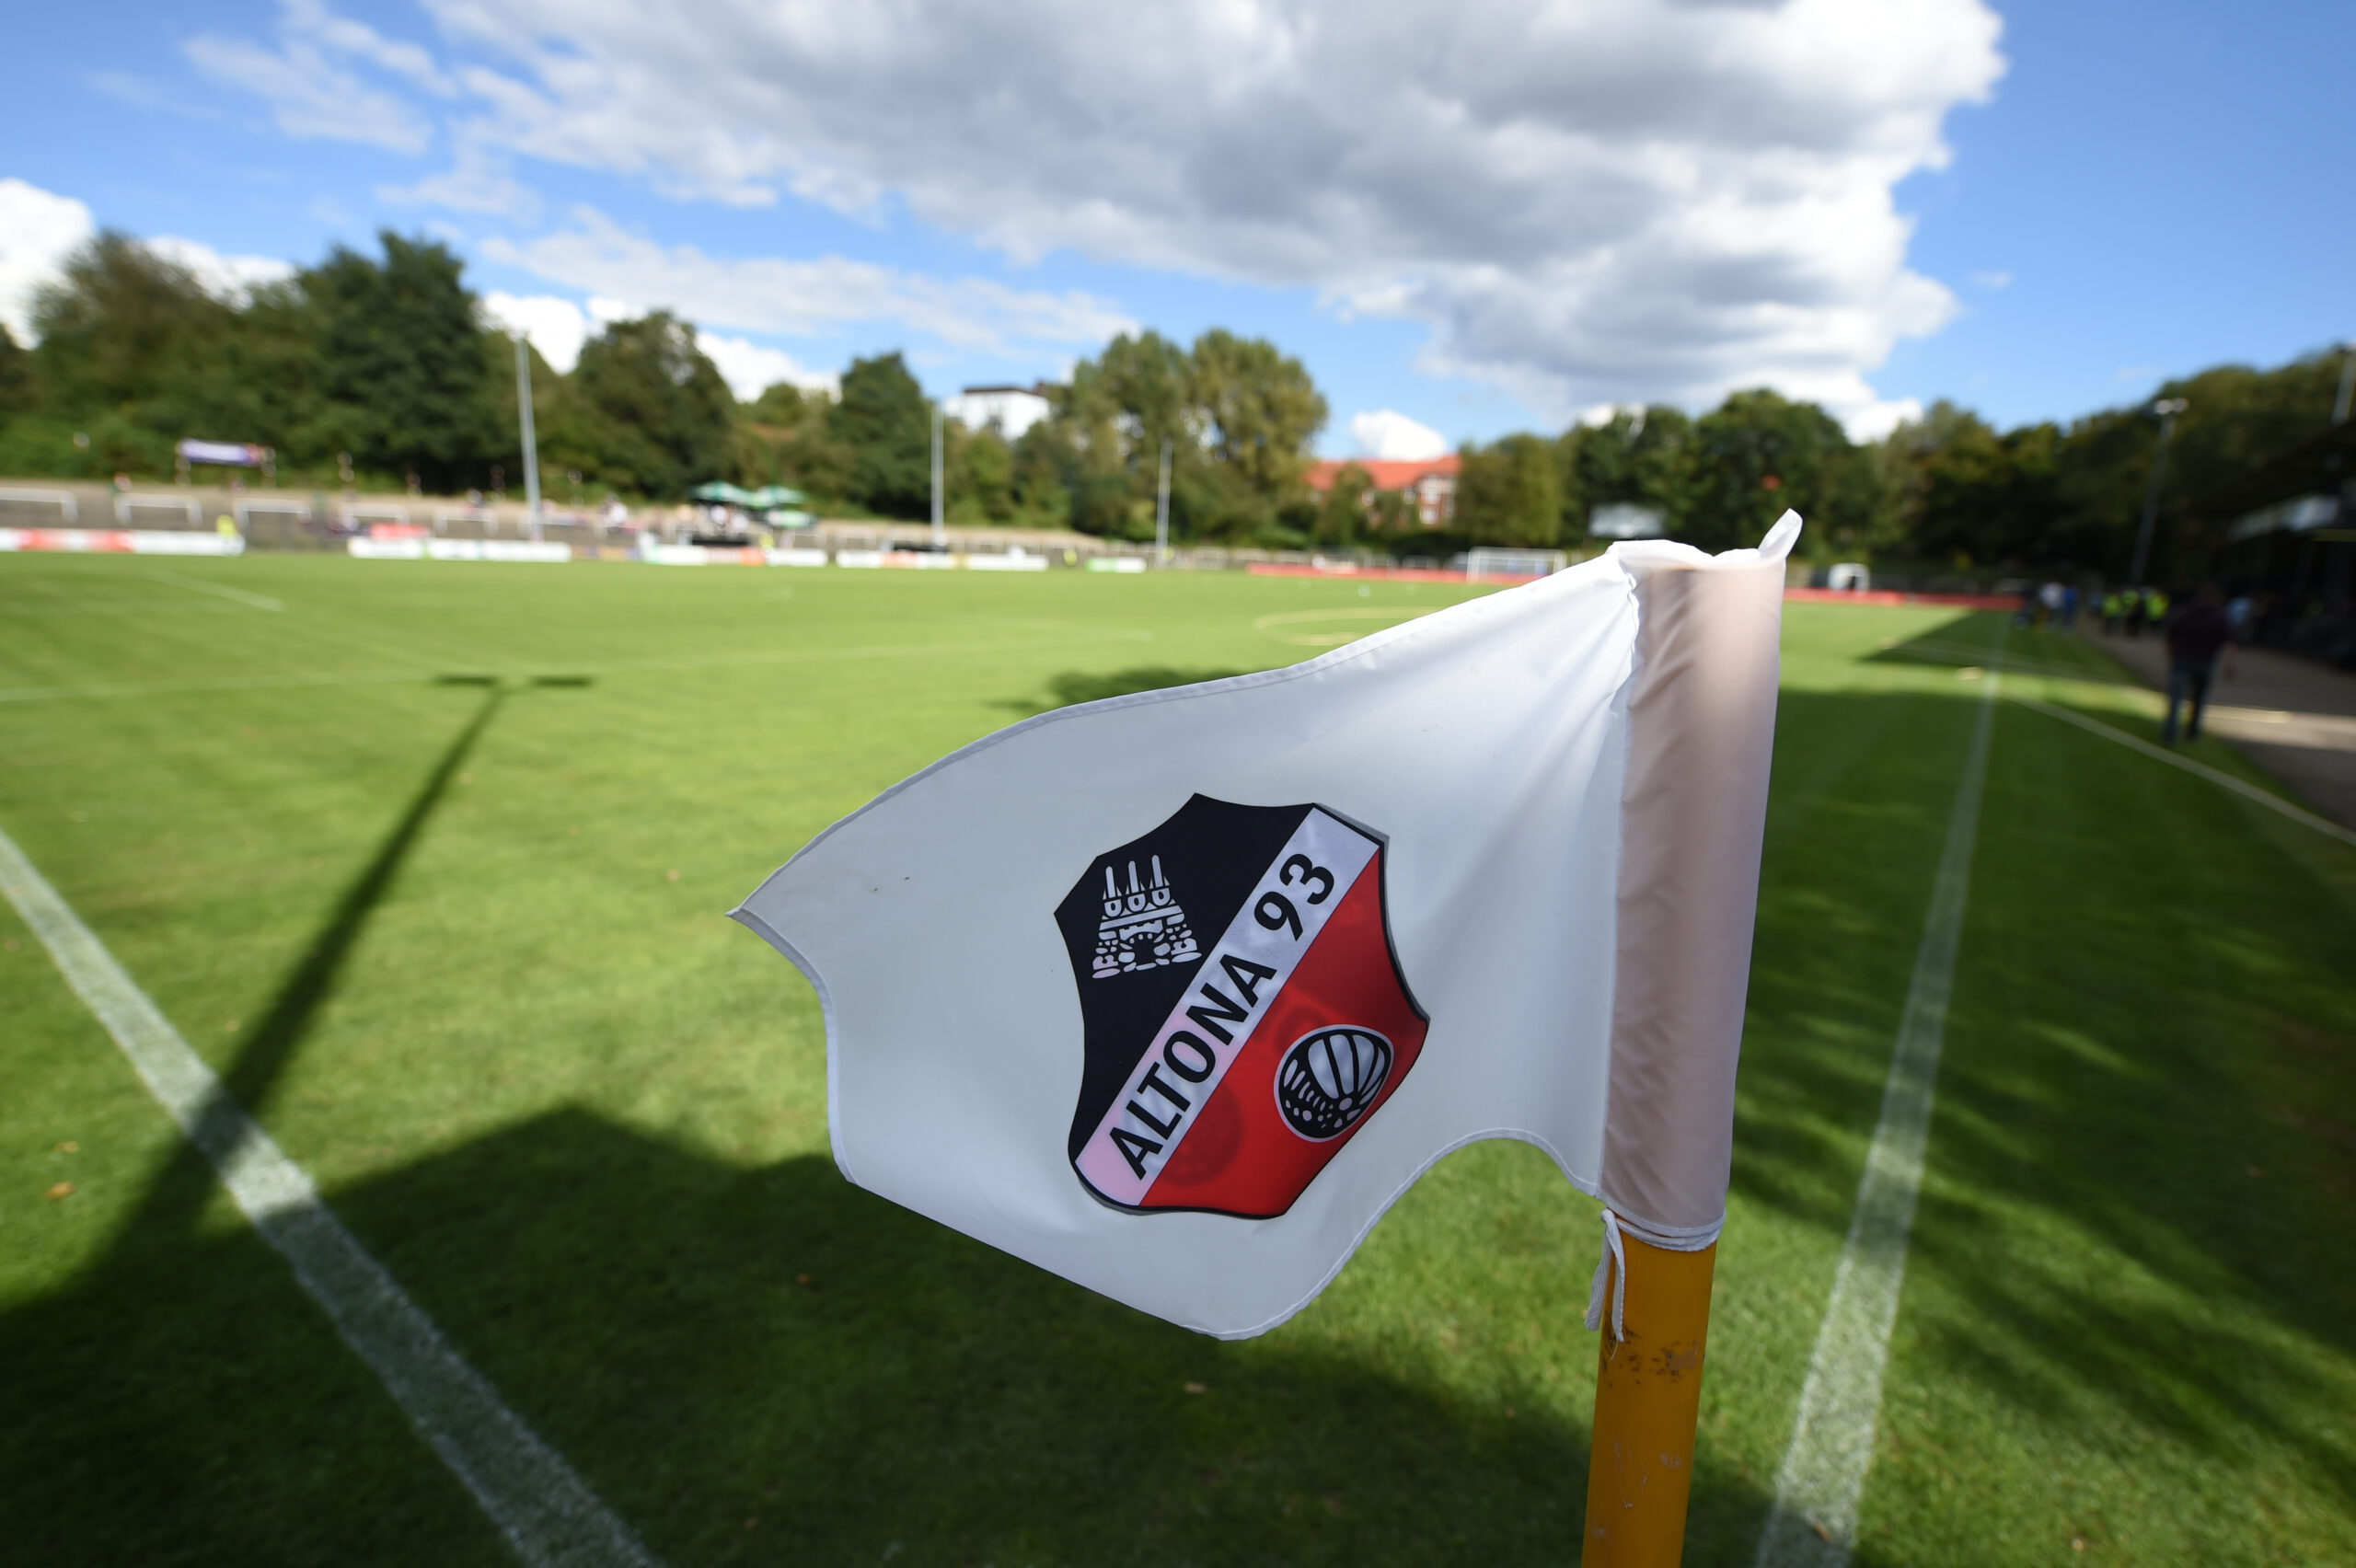 Es bleibt bei einem Regionalligastadion in Diebsteich. Es soll neue Heimat für den Verein Altona 93 werden.